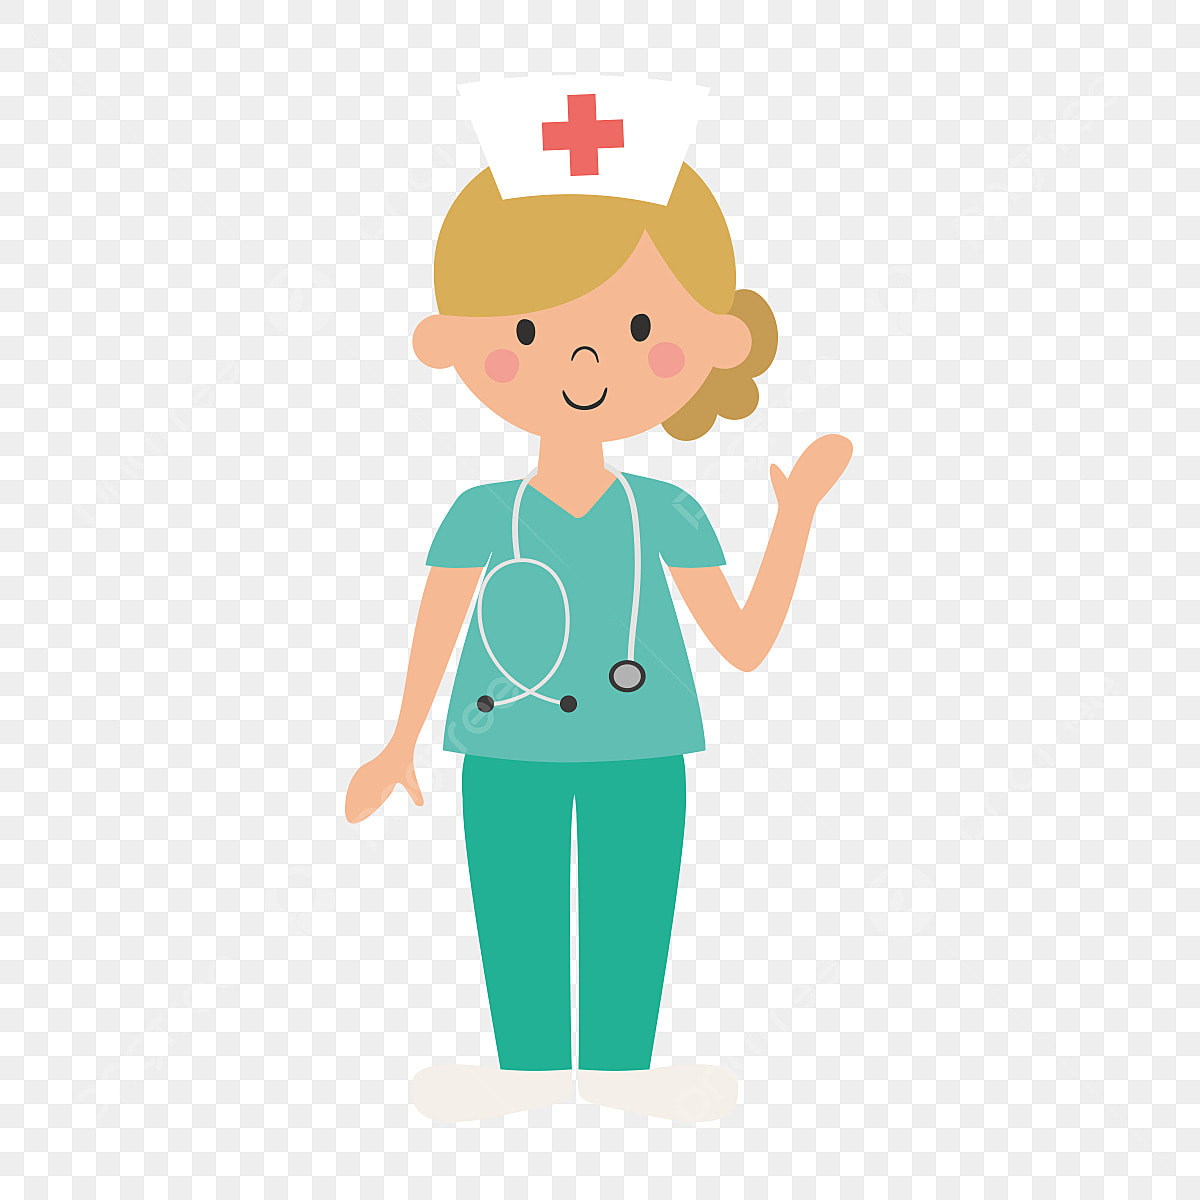 nurse picture cartoon